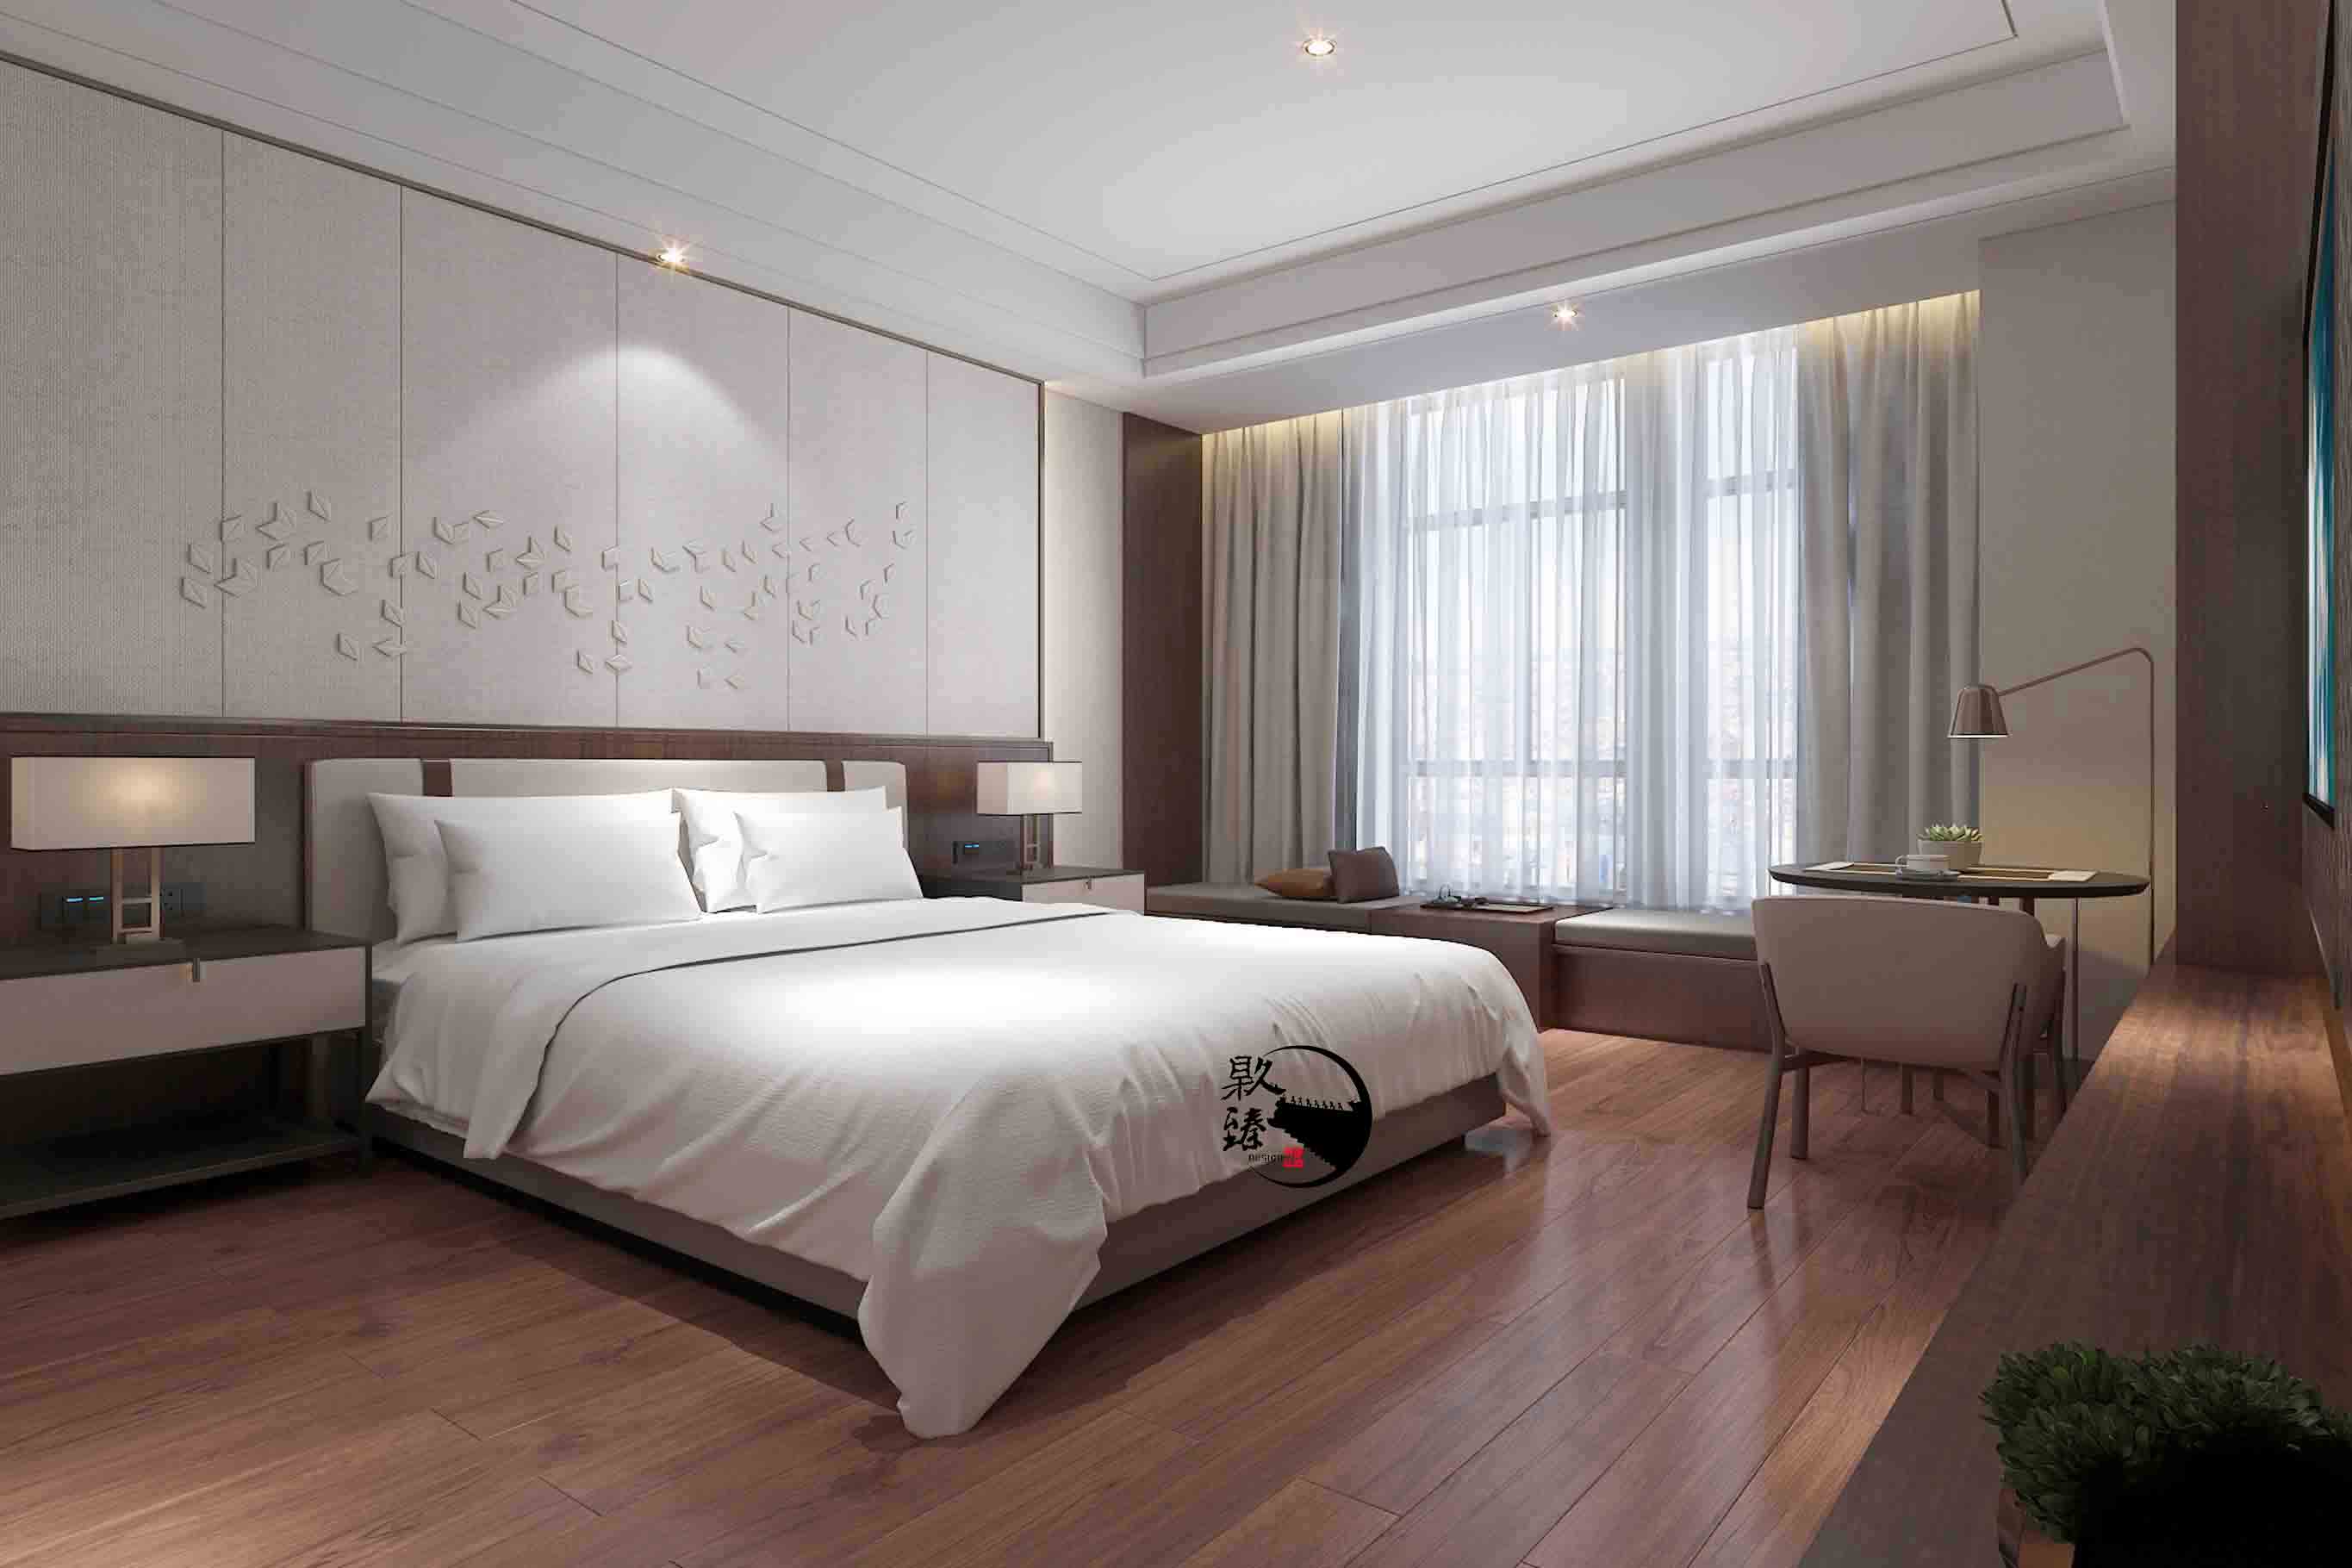 银川装修网米素酒店设计|满足客户对舒适和安静的需求